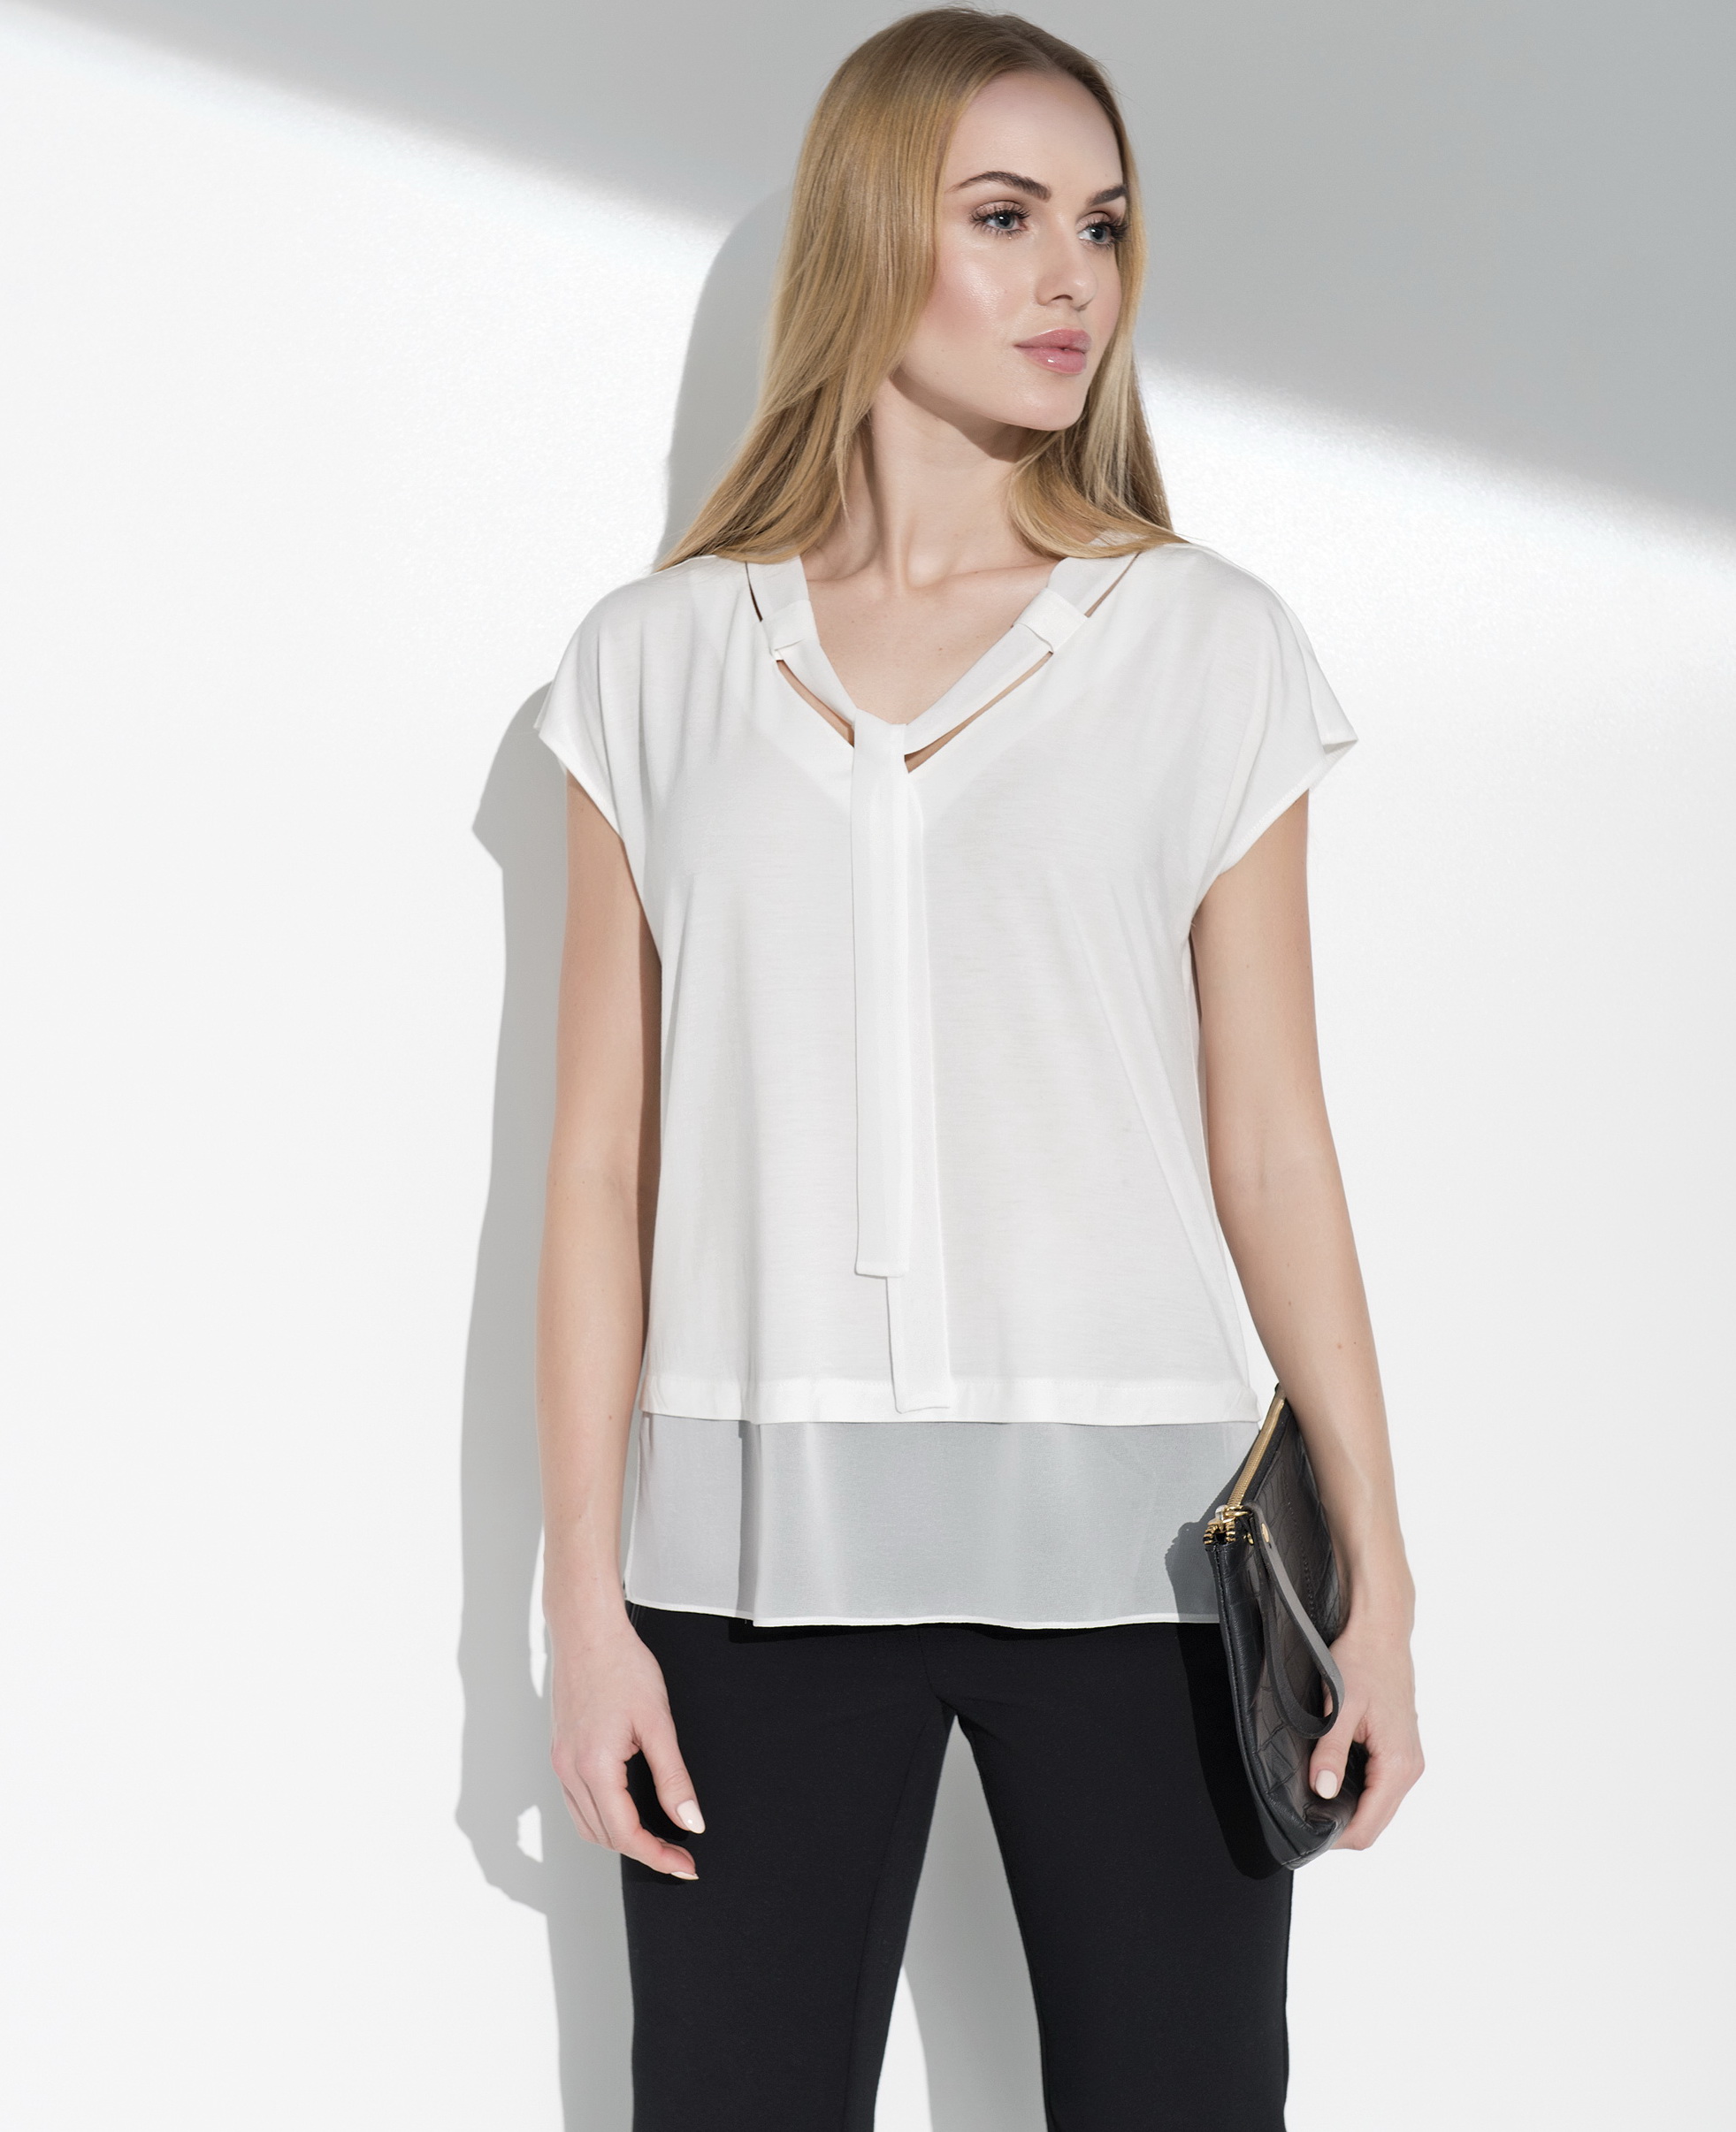 Женские блузки польша. Блузка Sunwear. Sunwear i21-3-02 блузка. Польские блузки. Блузки Польша.